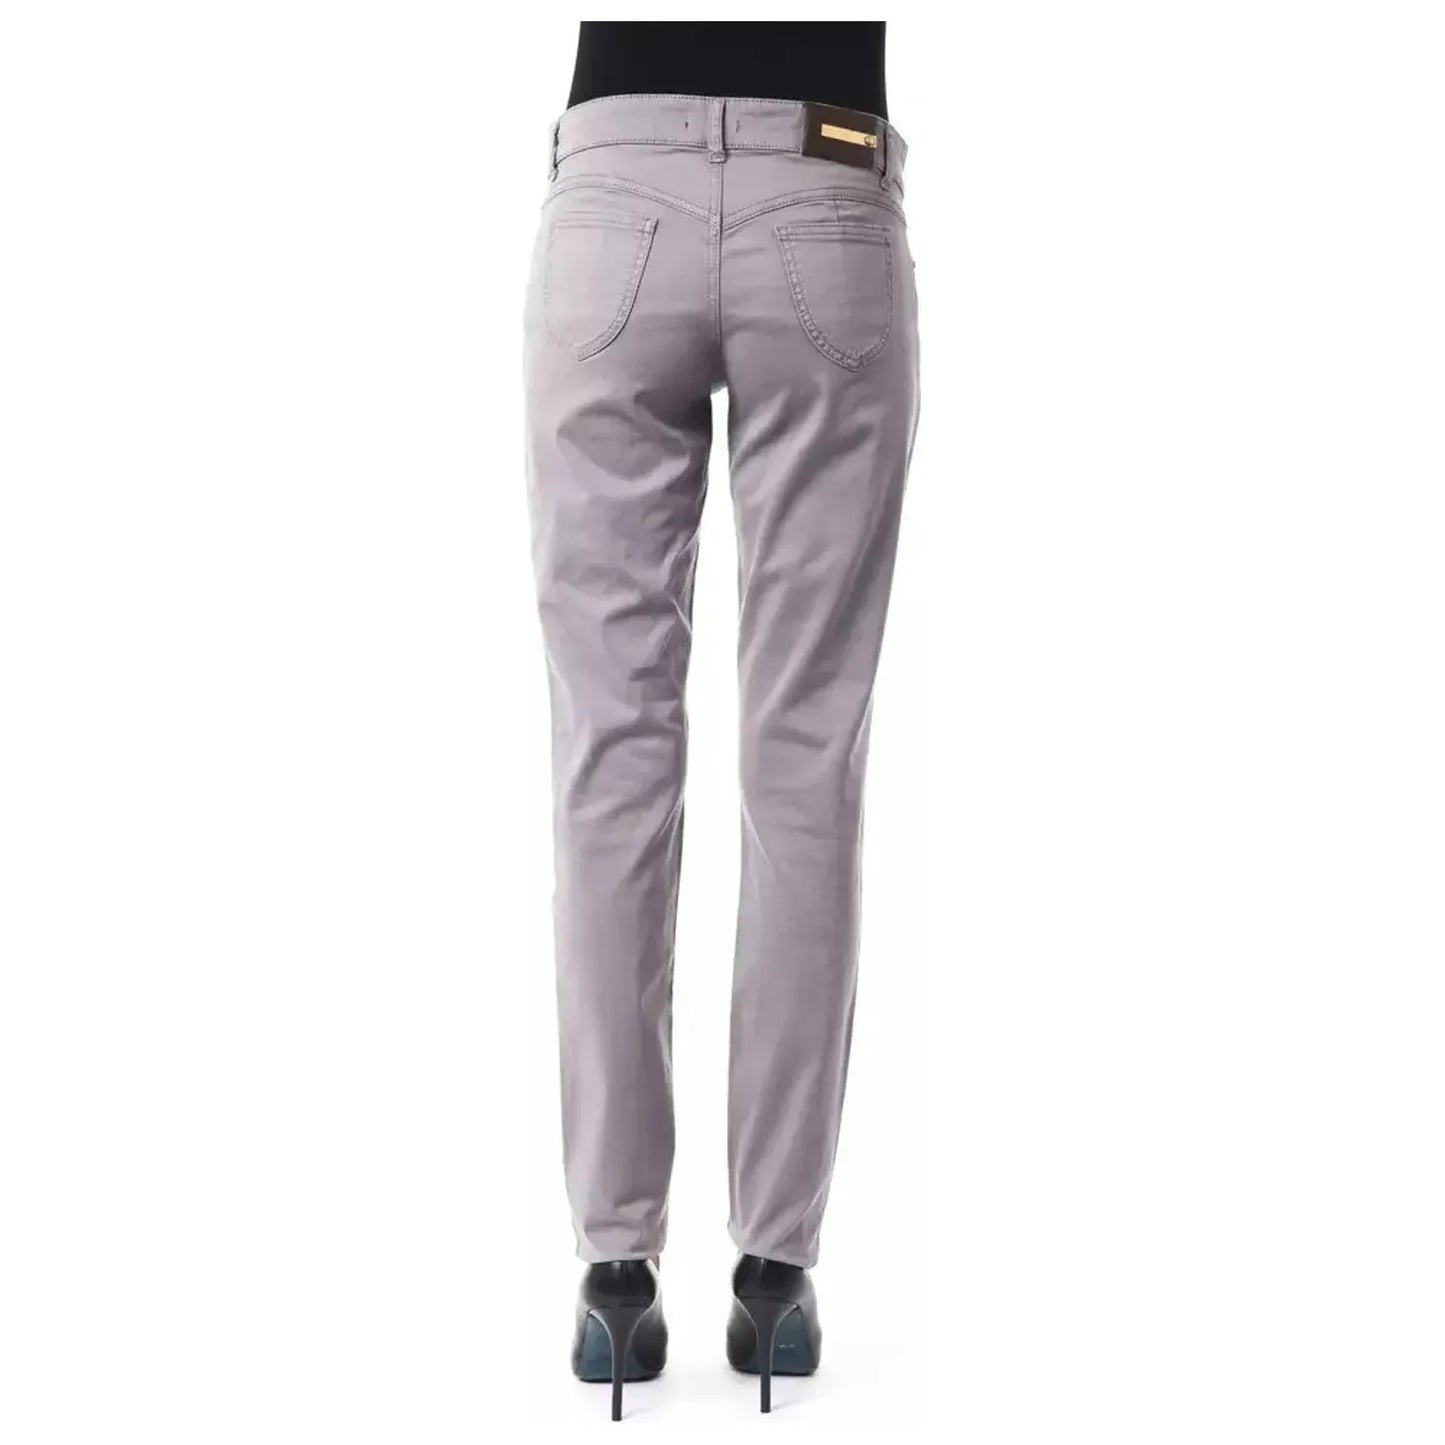 BYBLOS Chic Gray Cotton Blend Pants gray-cotton-jeans-pant-14 stock_product_image_17633_507146042-16-c0a9e876-eb2.webp